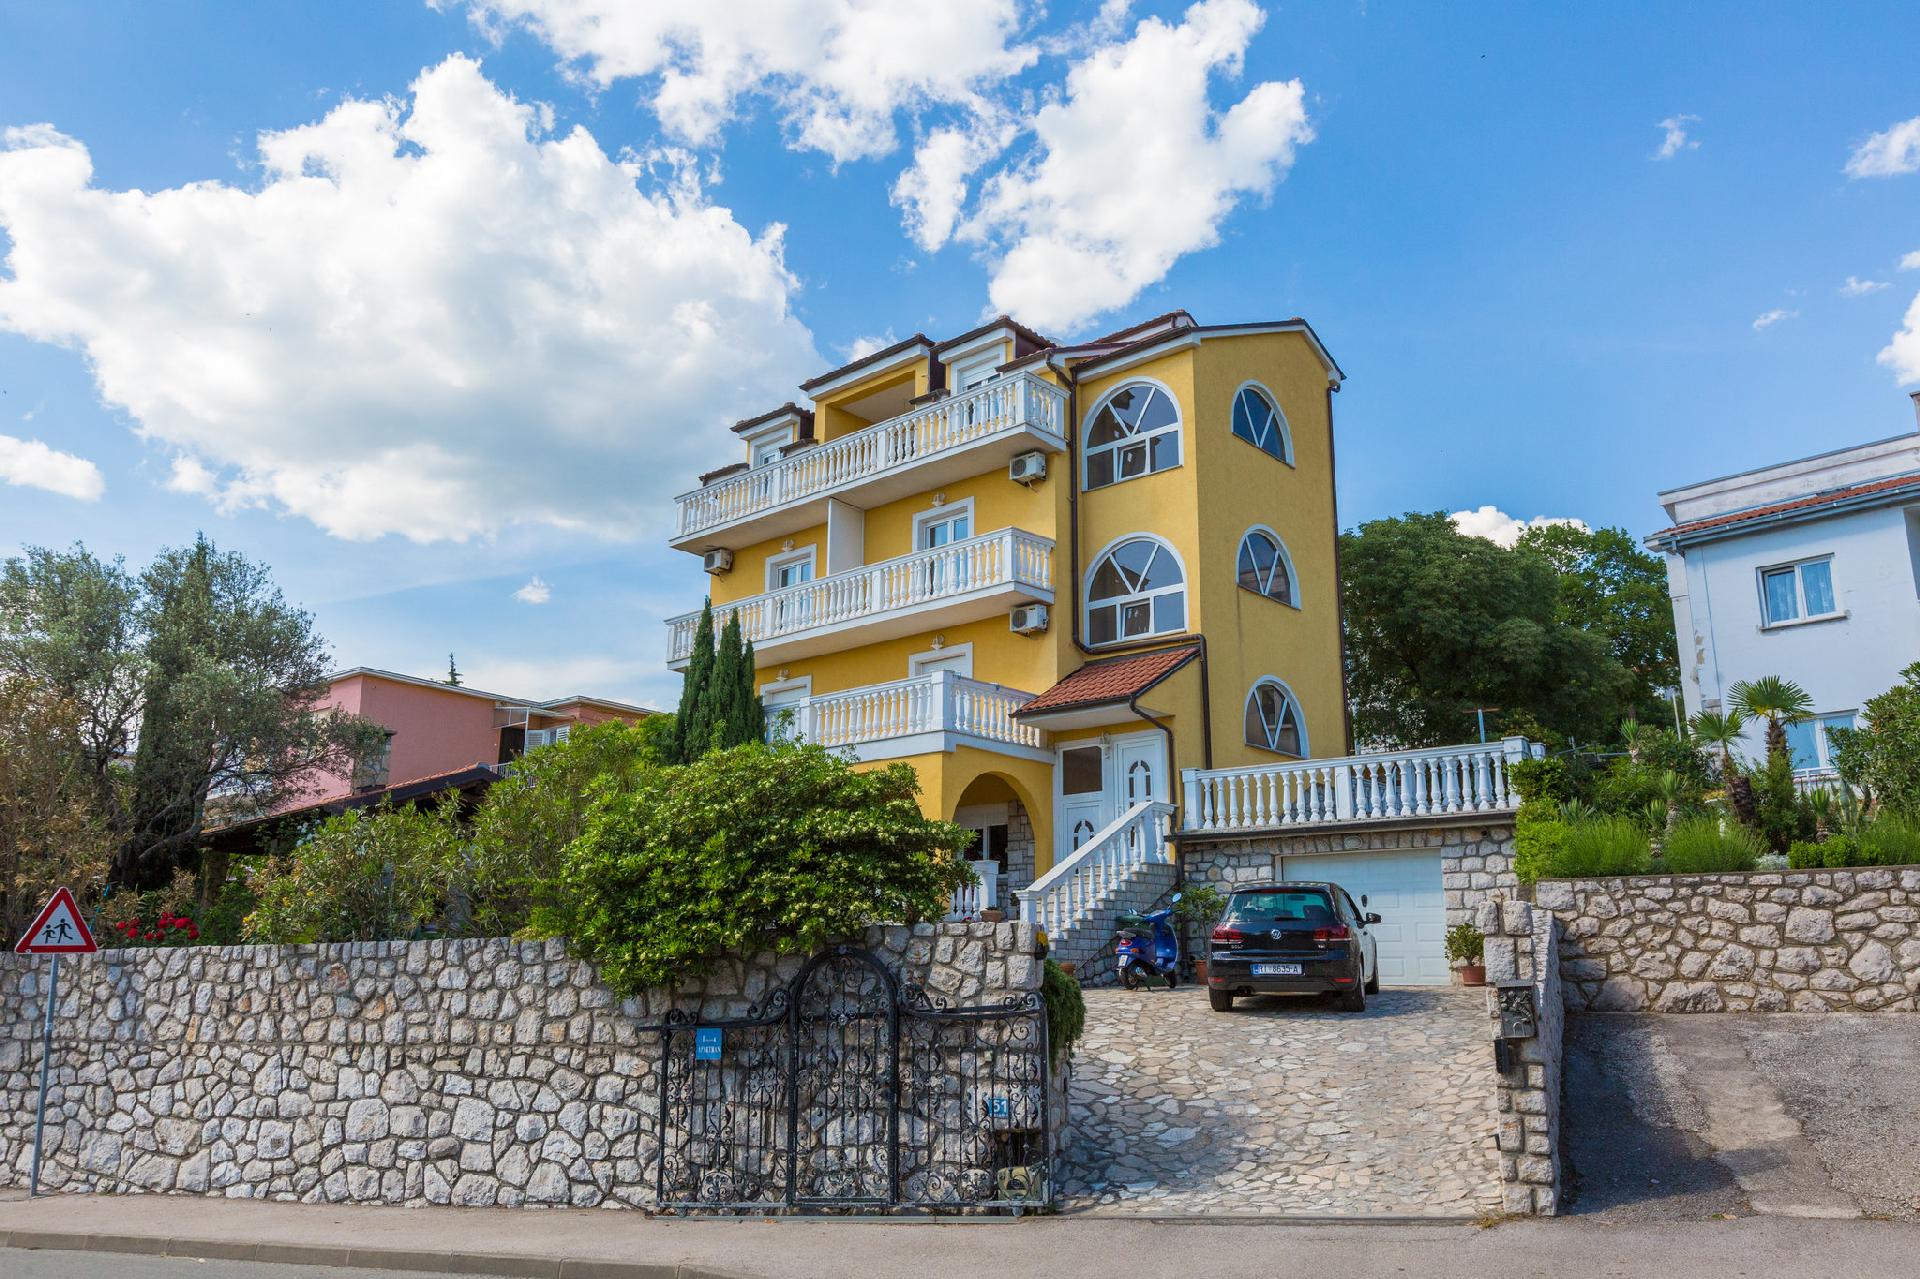 Ferienwohnung für 4 Personen ca. 36 m² i  in Kroatien